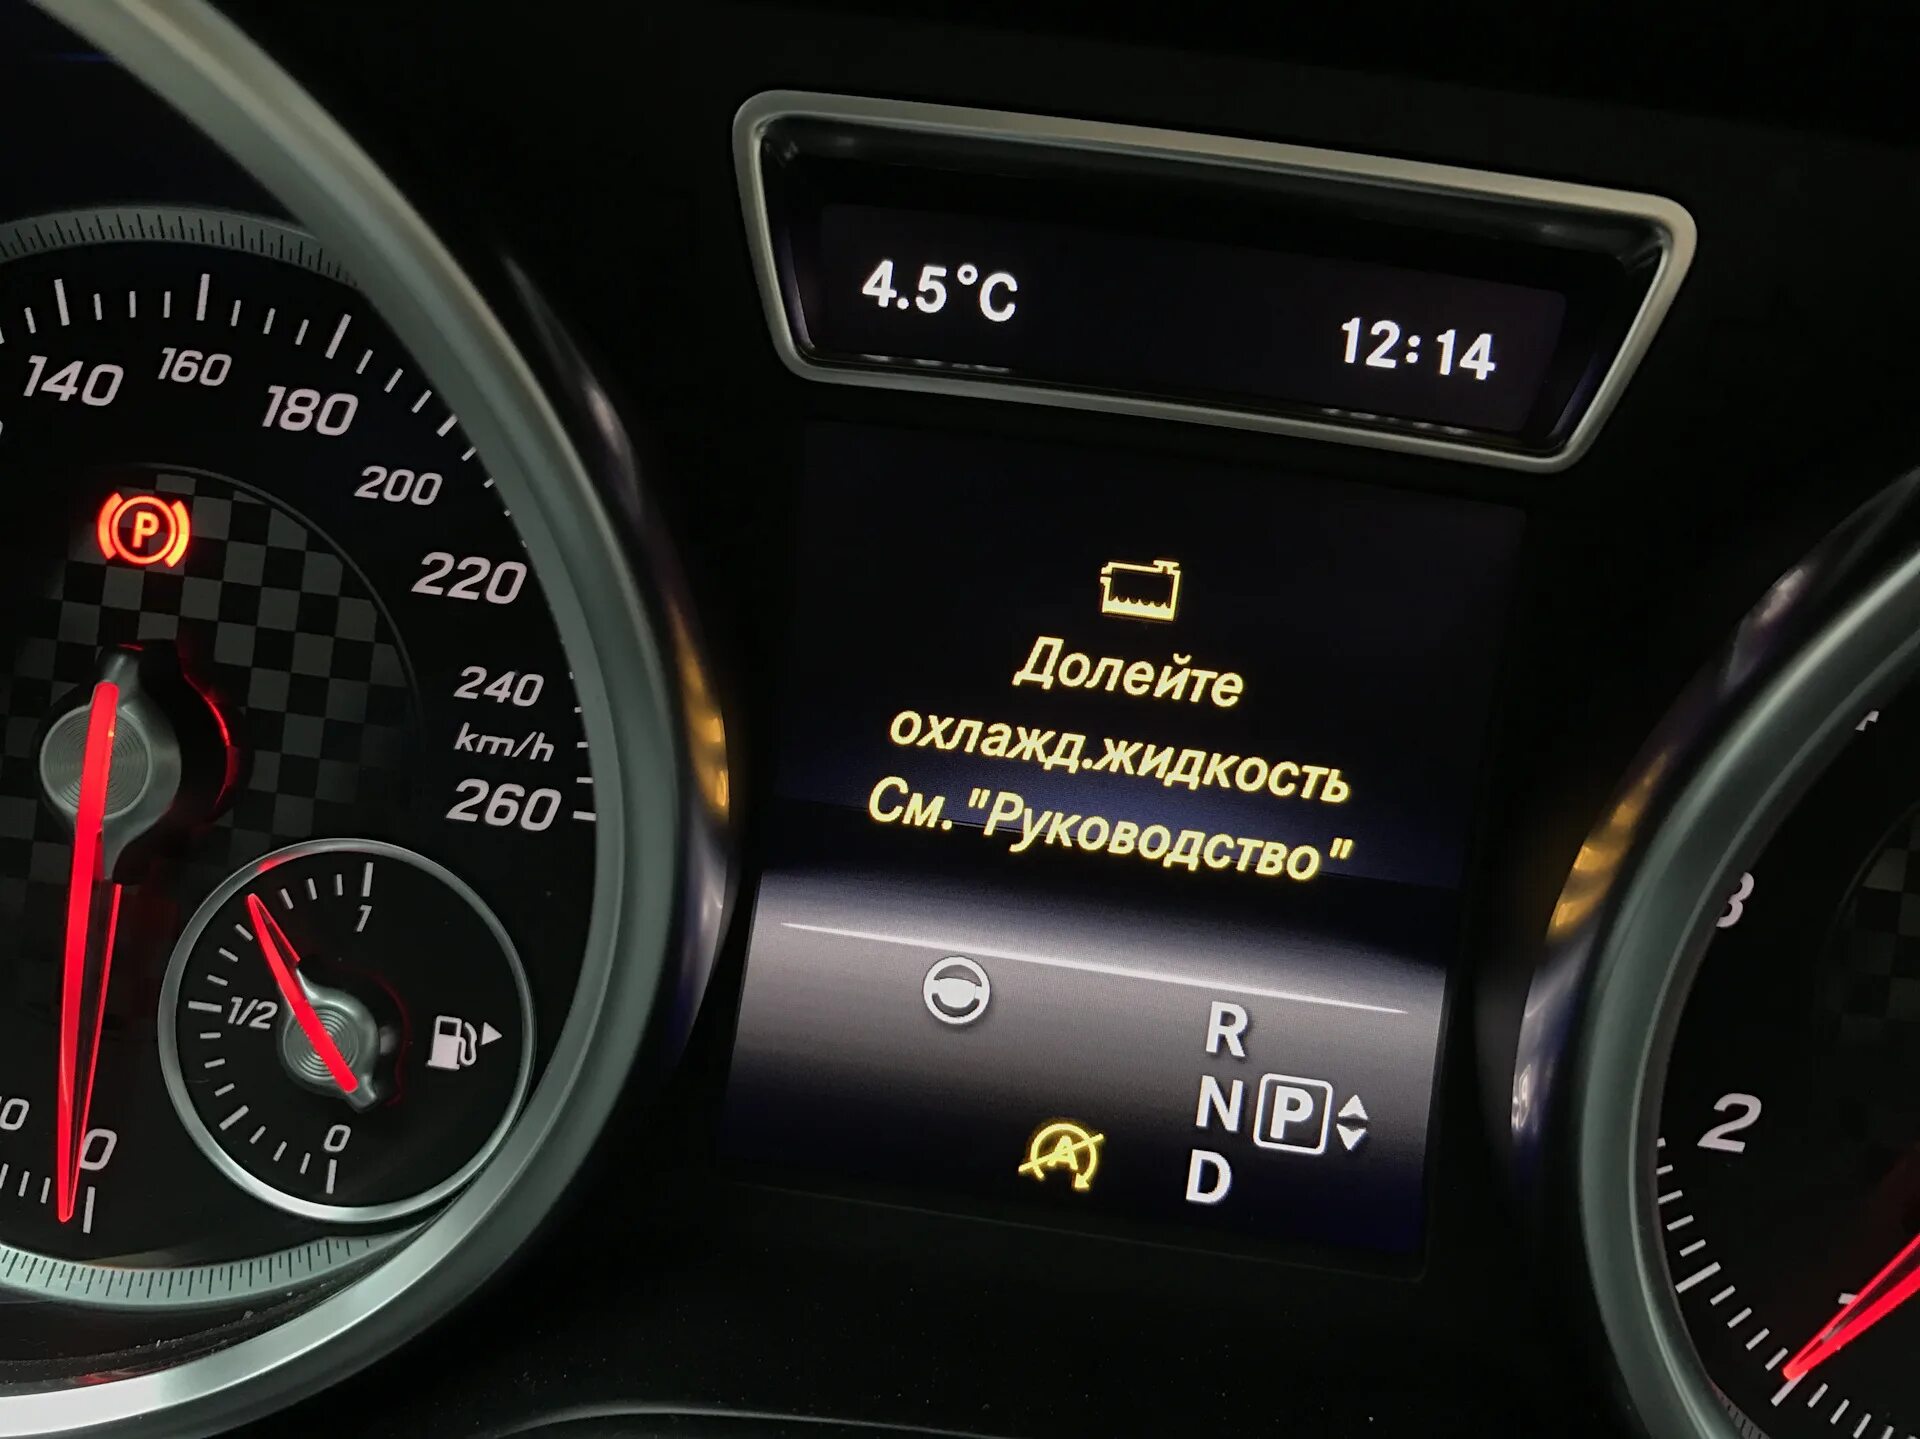 Mercedes-Benz c 200 охлаждающая жидкость. Mercedes Benz gl 350 2016 долейте охлаждающую жидкость. Индикатор уровня охлаждающей жидкости w222. Долейте охлаждающую жидкость Мерседес w204. Температура воды в автомобиле